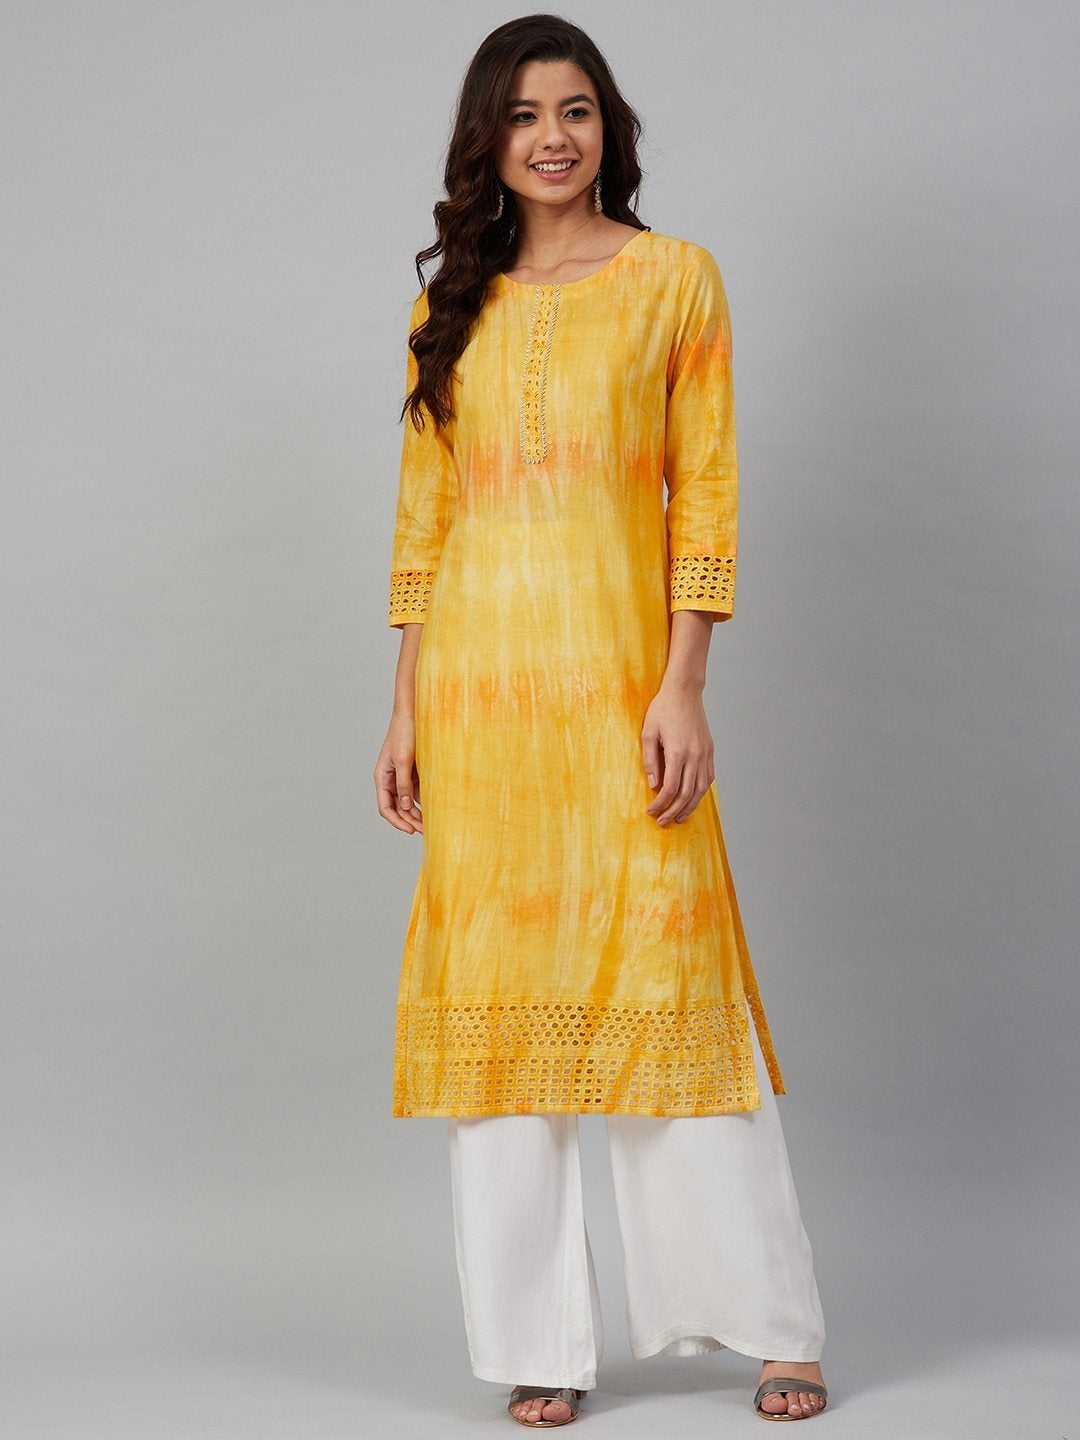 Women's Yellow & Orange Dyed Straight Kurta - Meeranshi